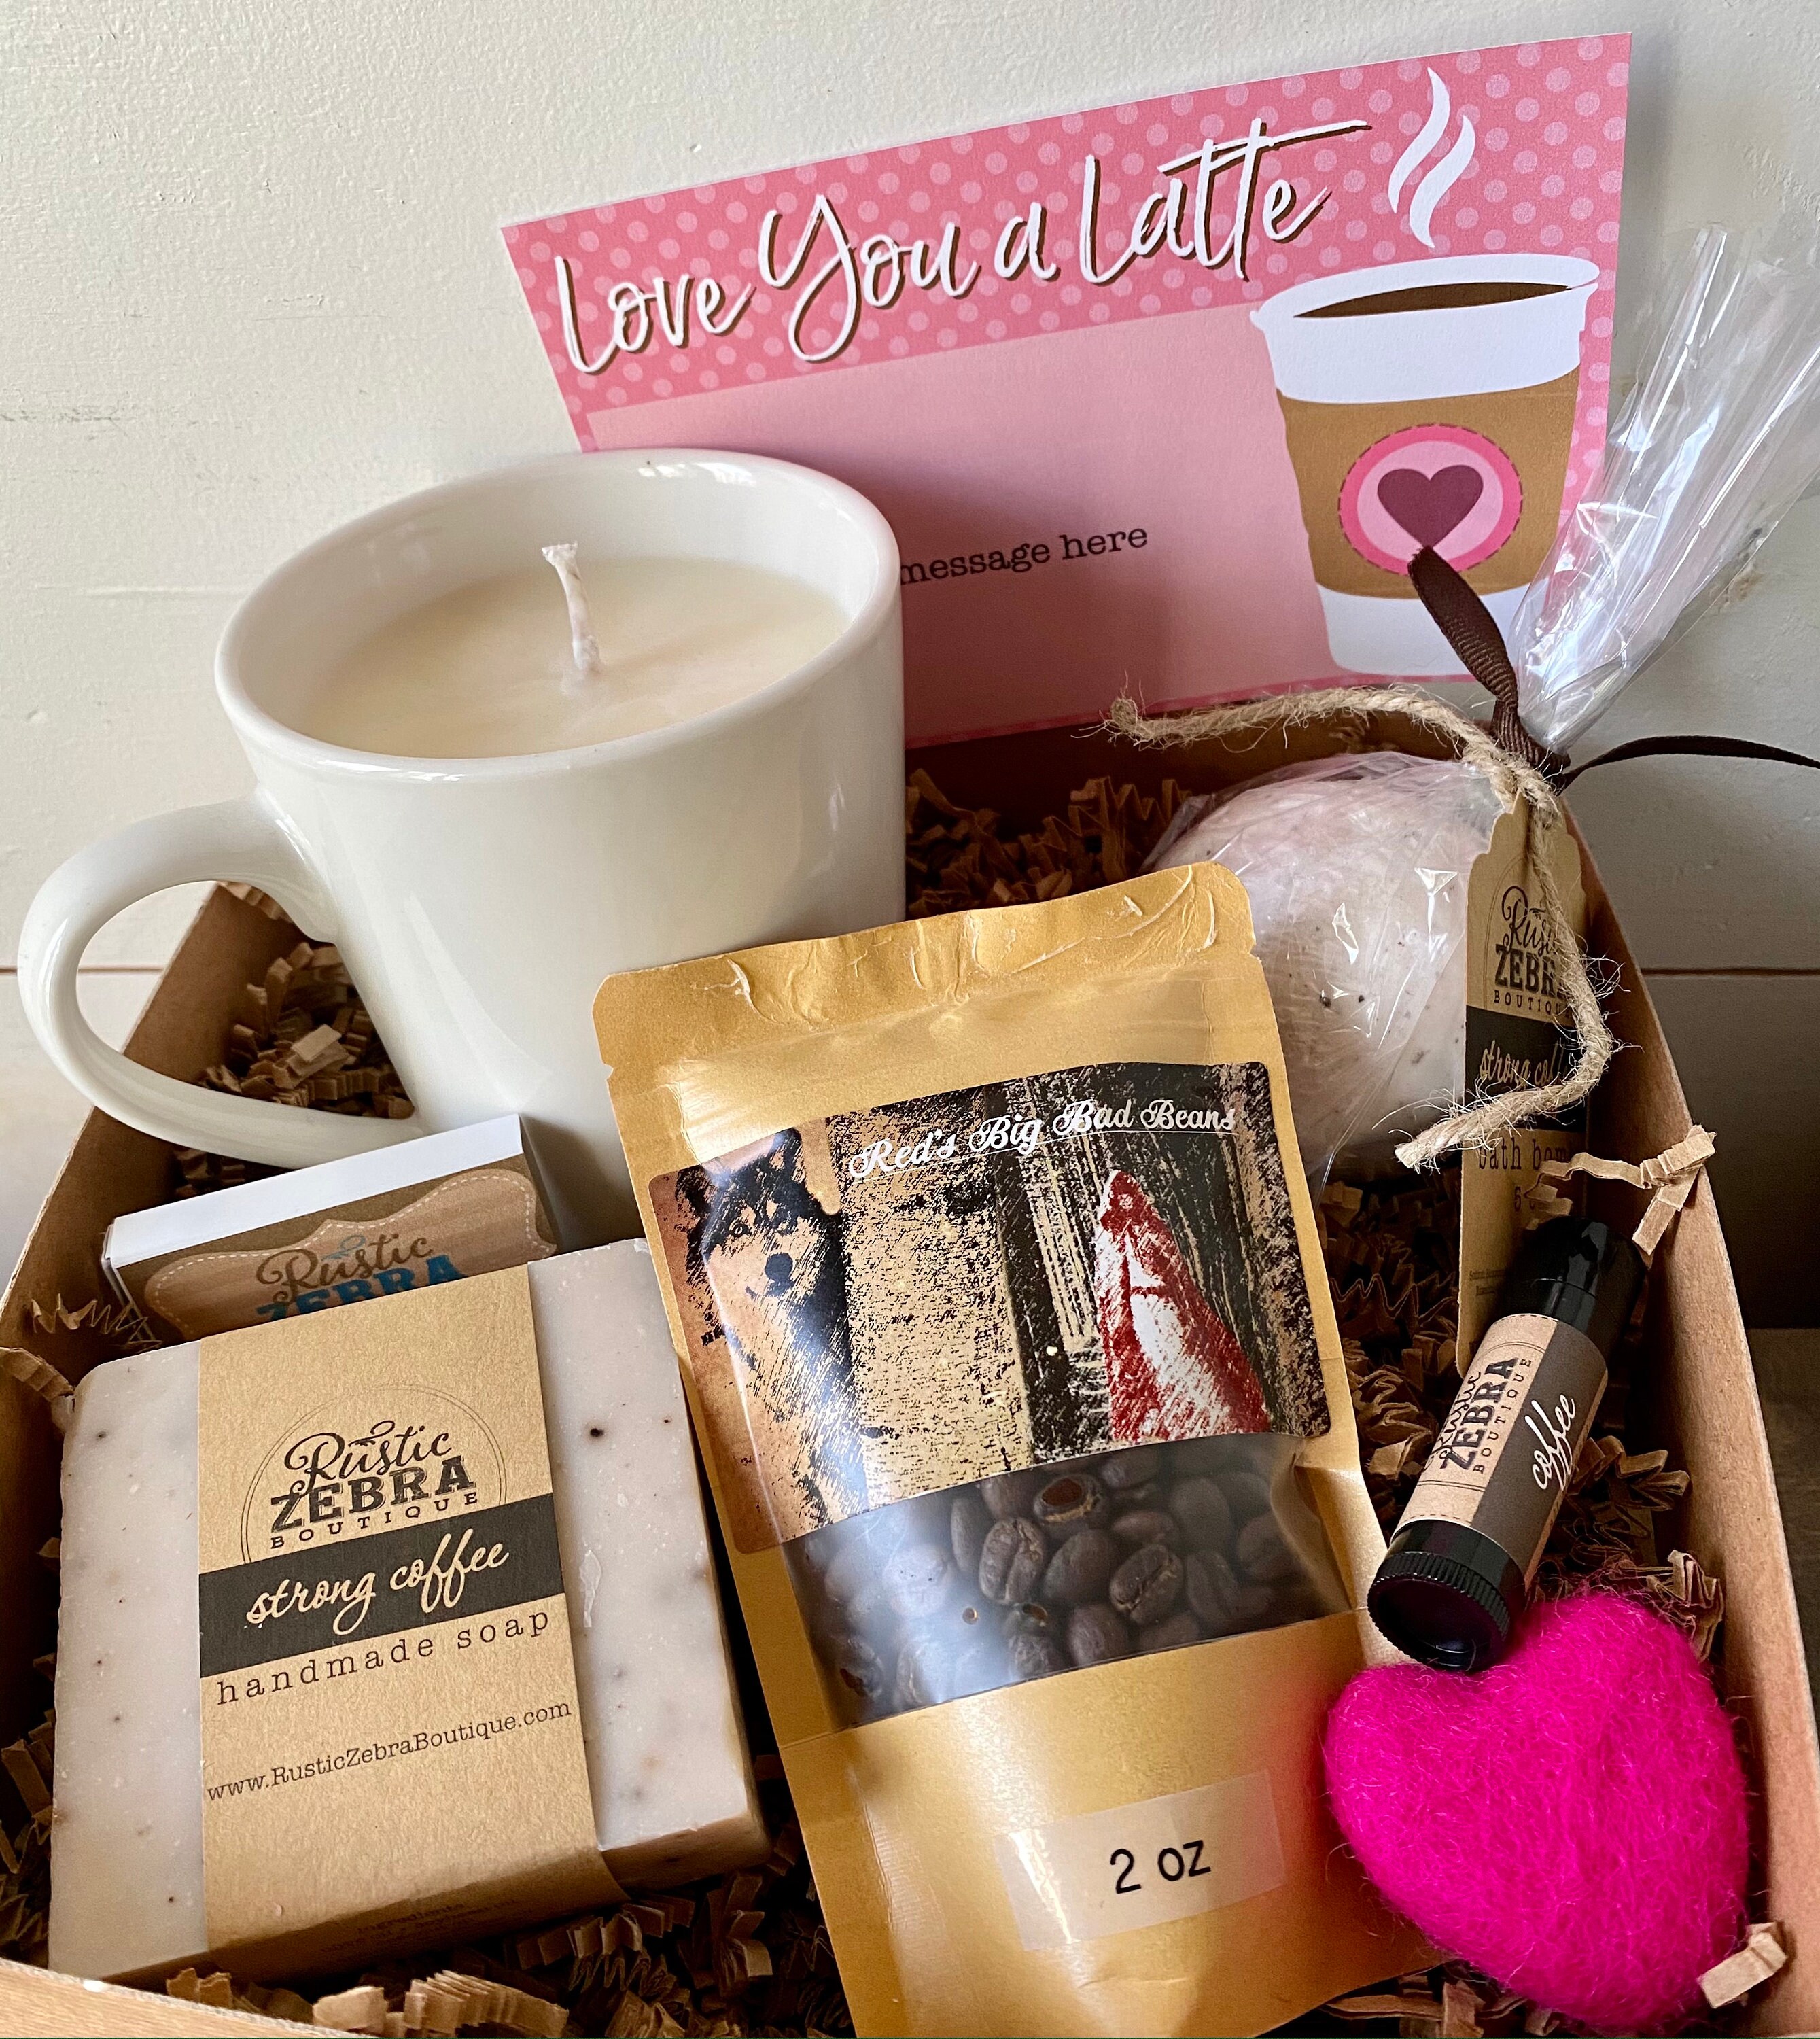 Caja de regalo San Valentín café 1 pza